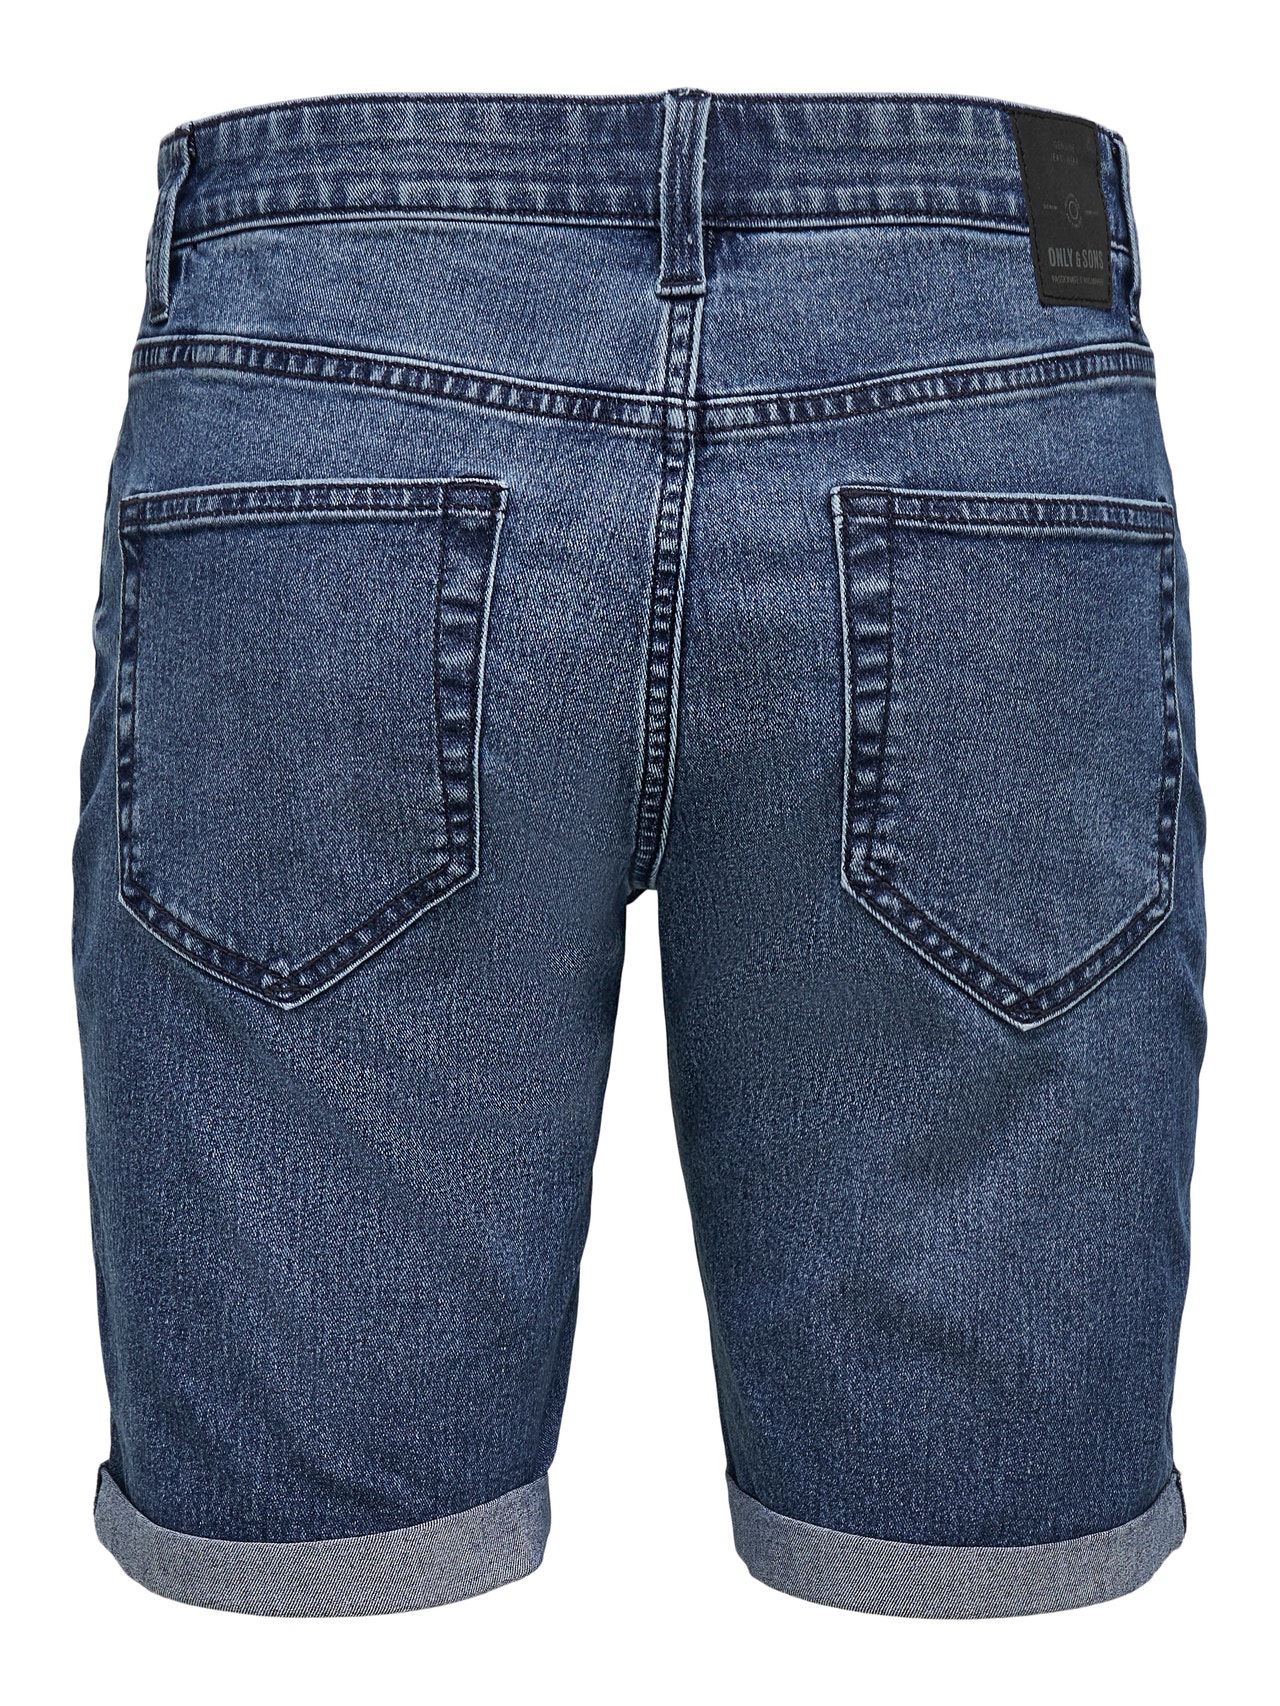 ONLY & SONS Slim Fit Middels høy midje Shorts -Blue Denim - 22020754